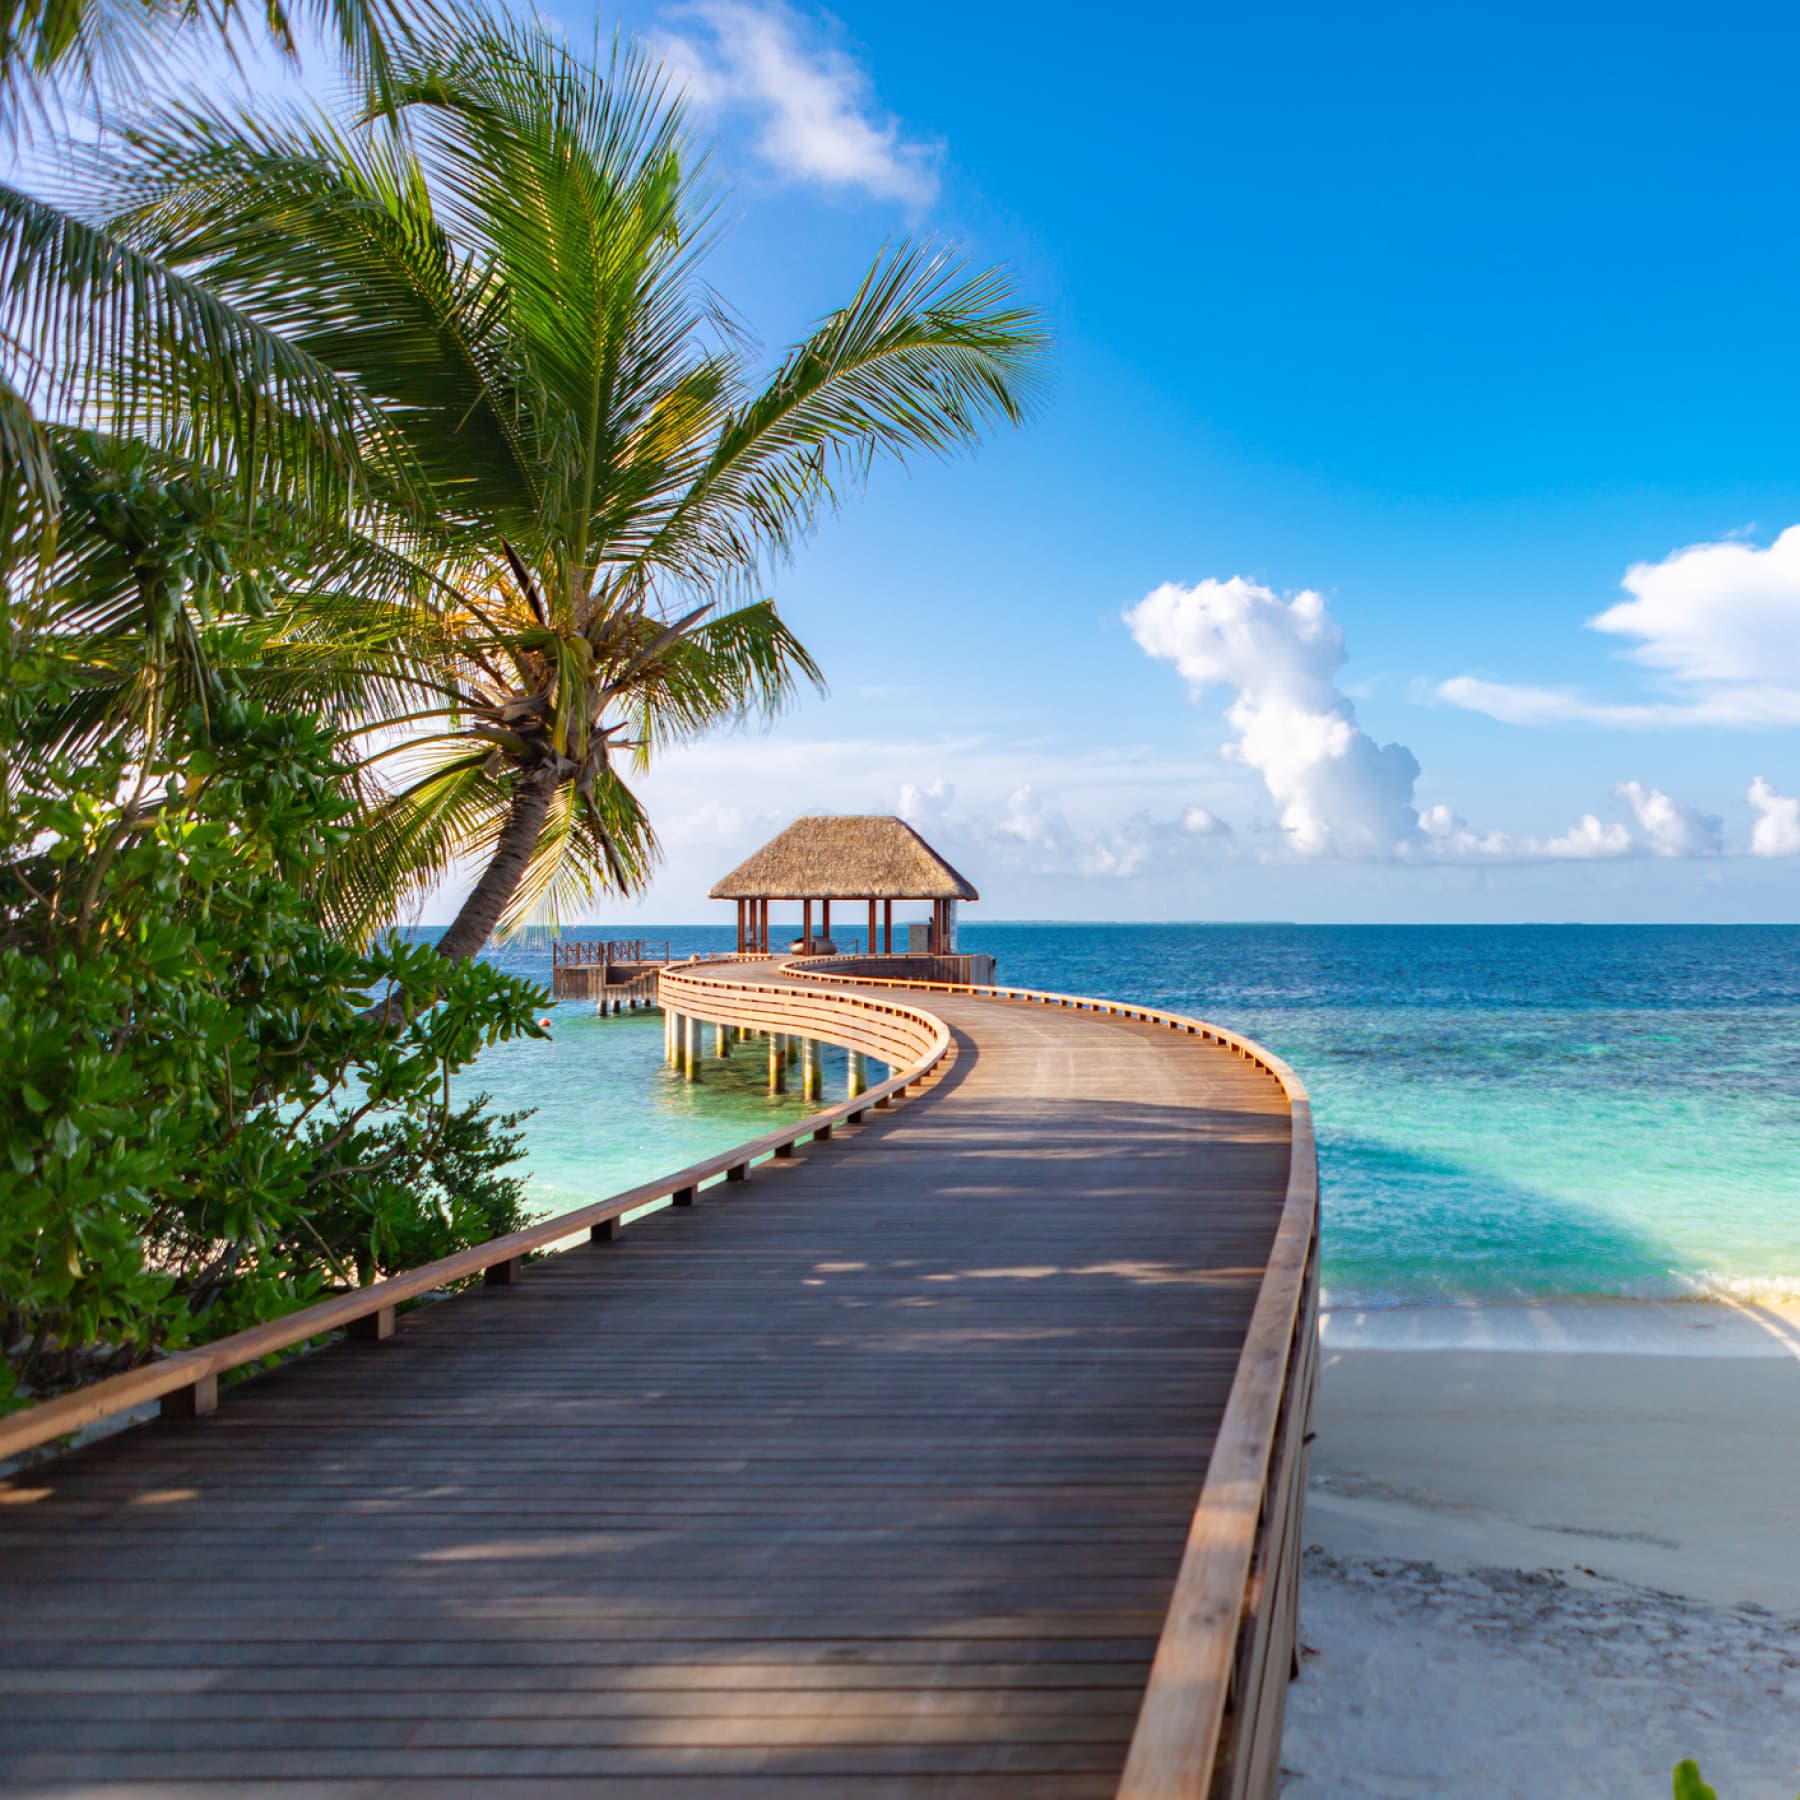 Maldives holiday in January